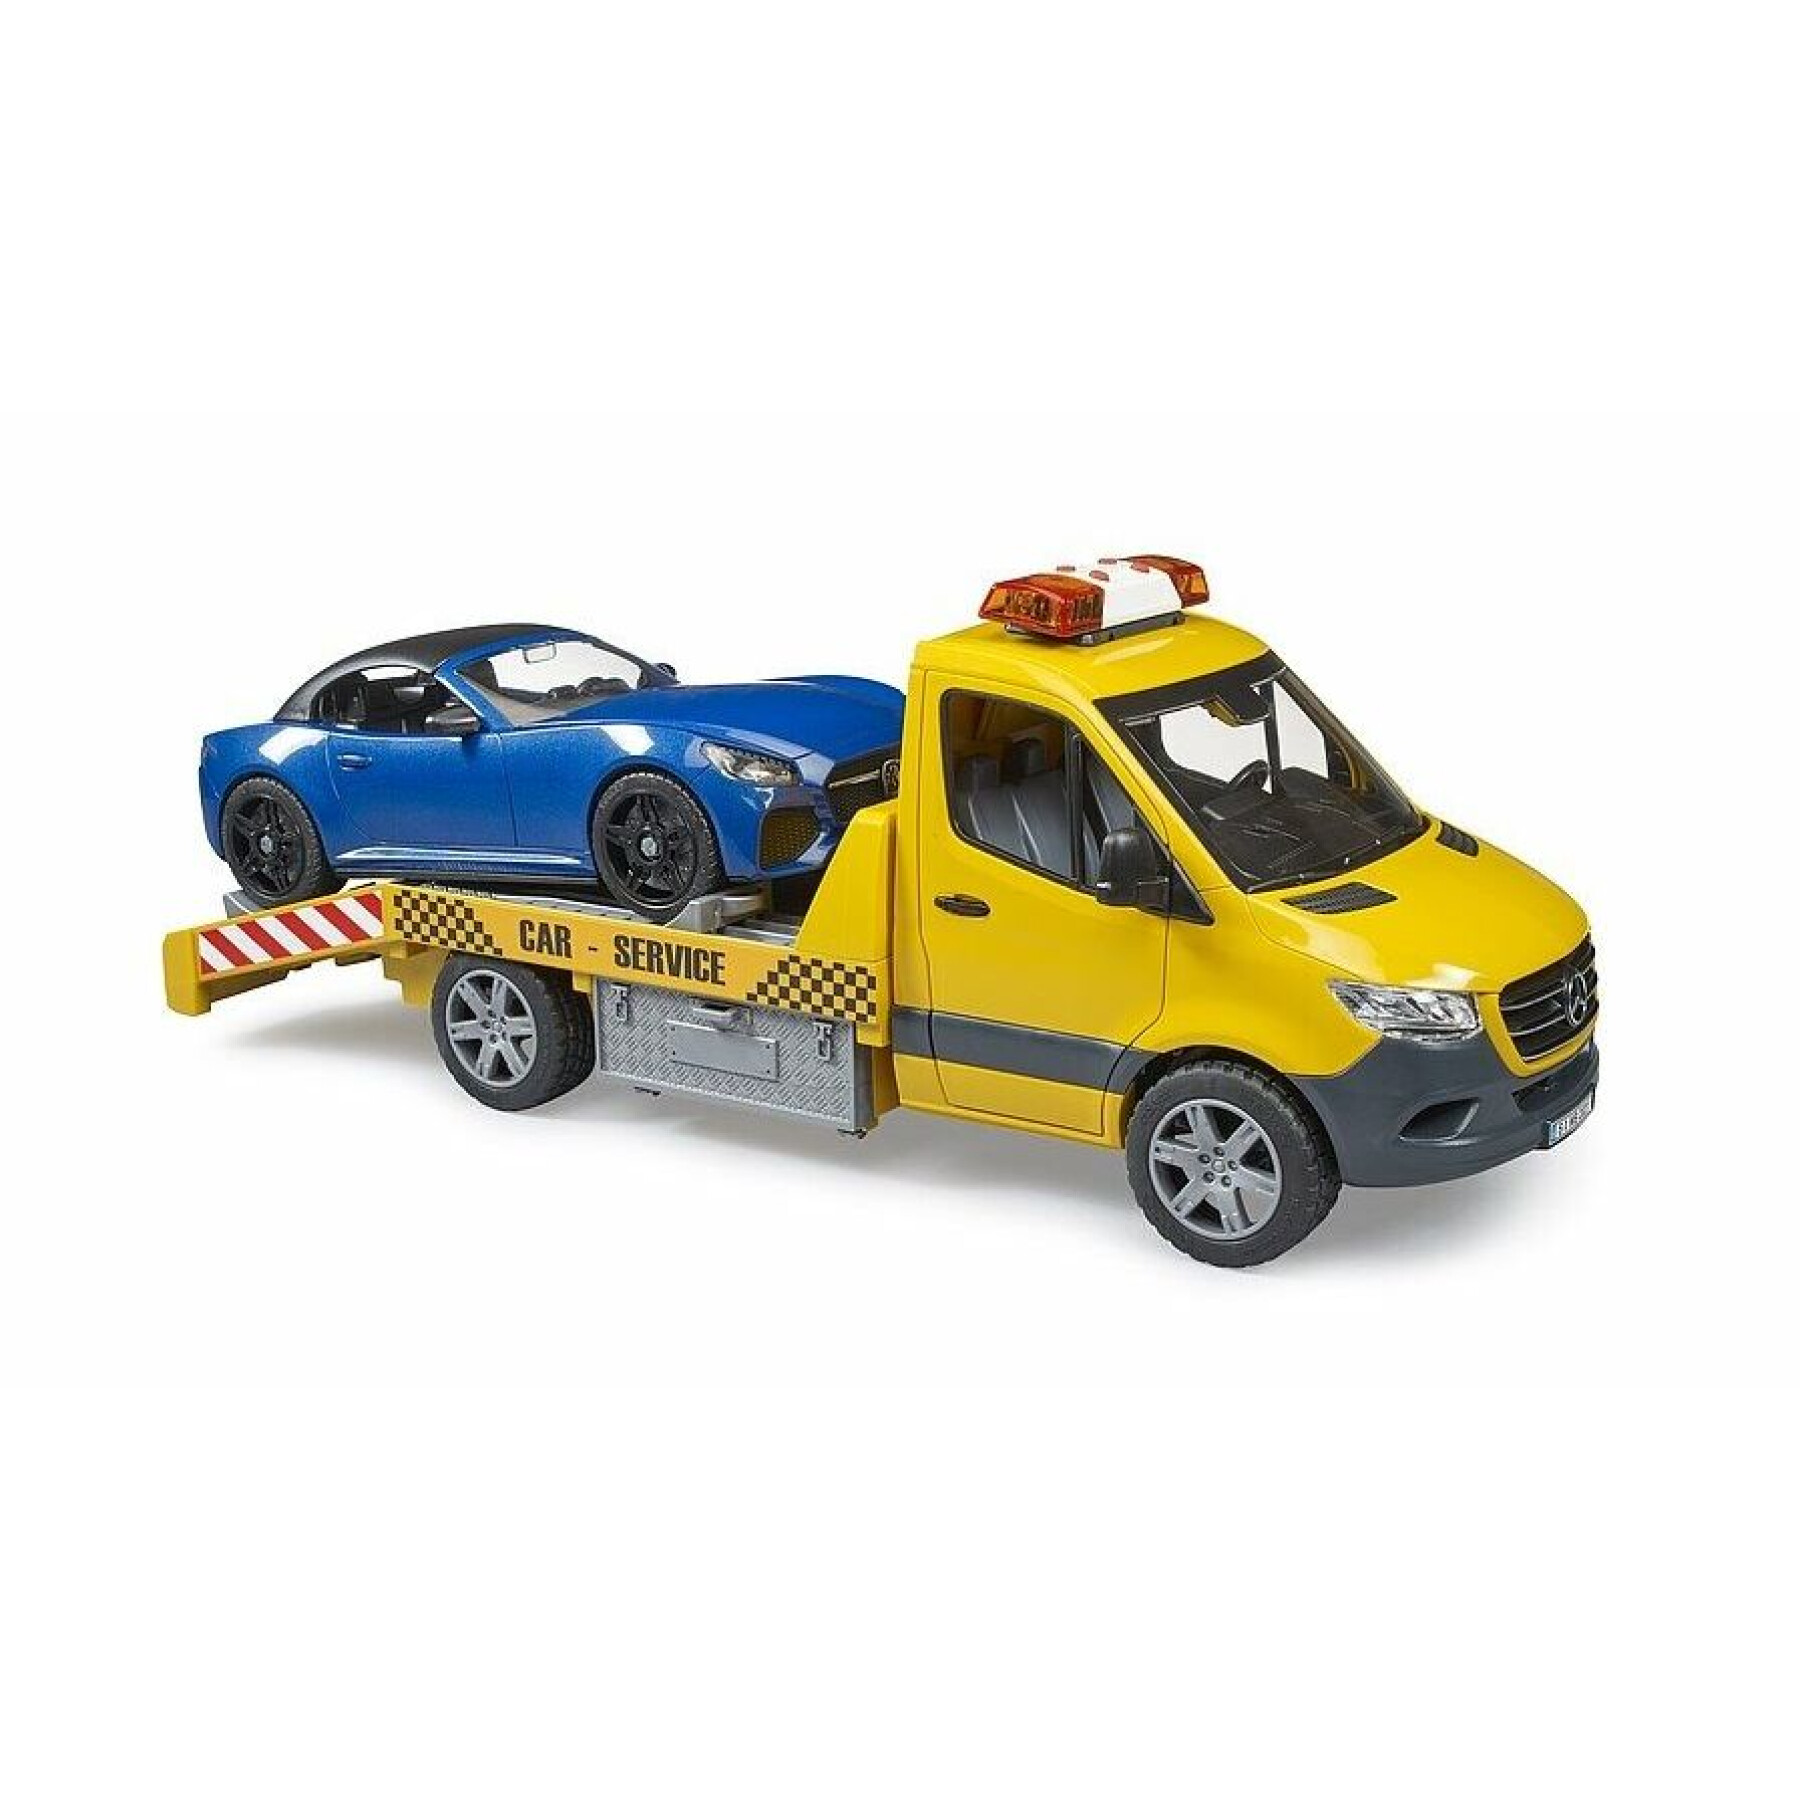 Car games - mb sprinter transporter with roadster Bruder